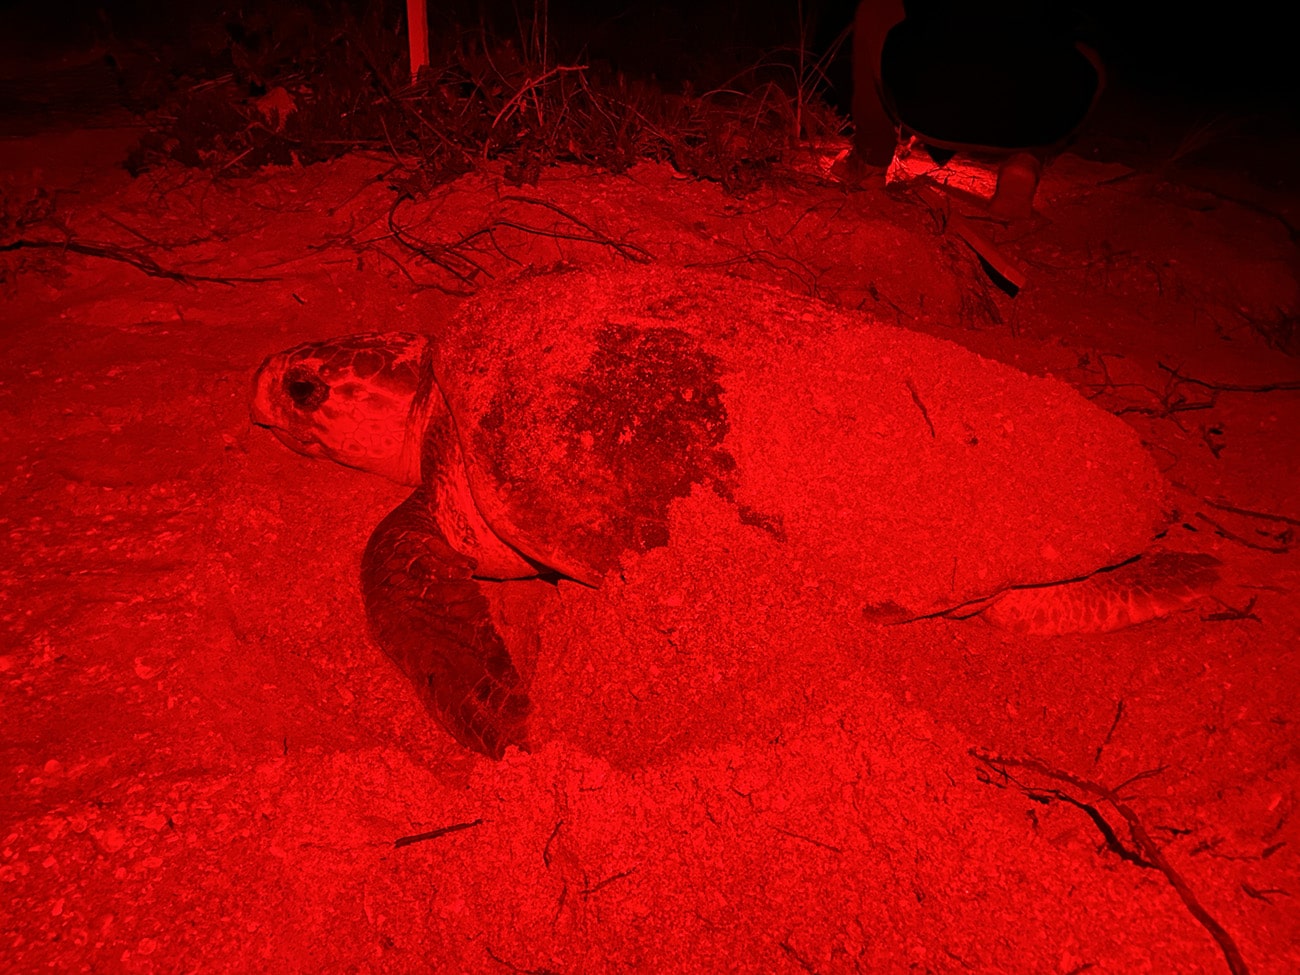 loggerhead sea turtle nesting at night